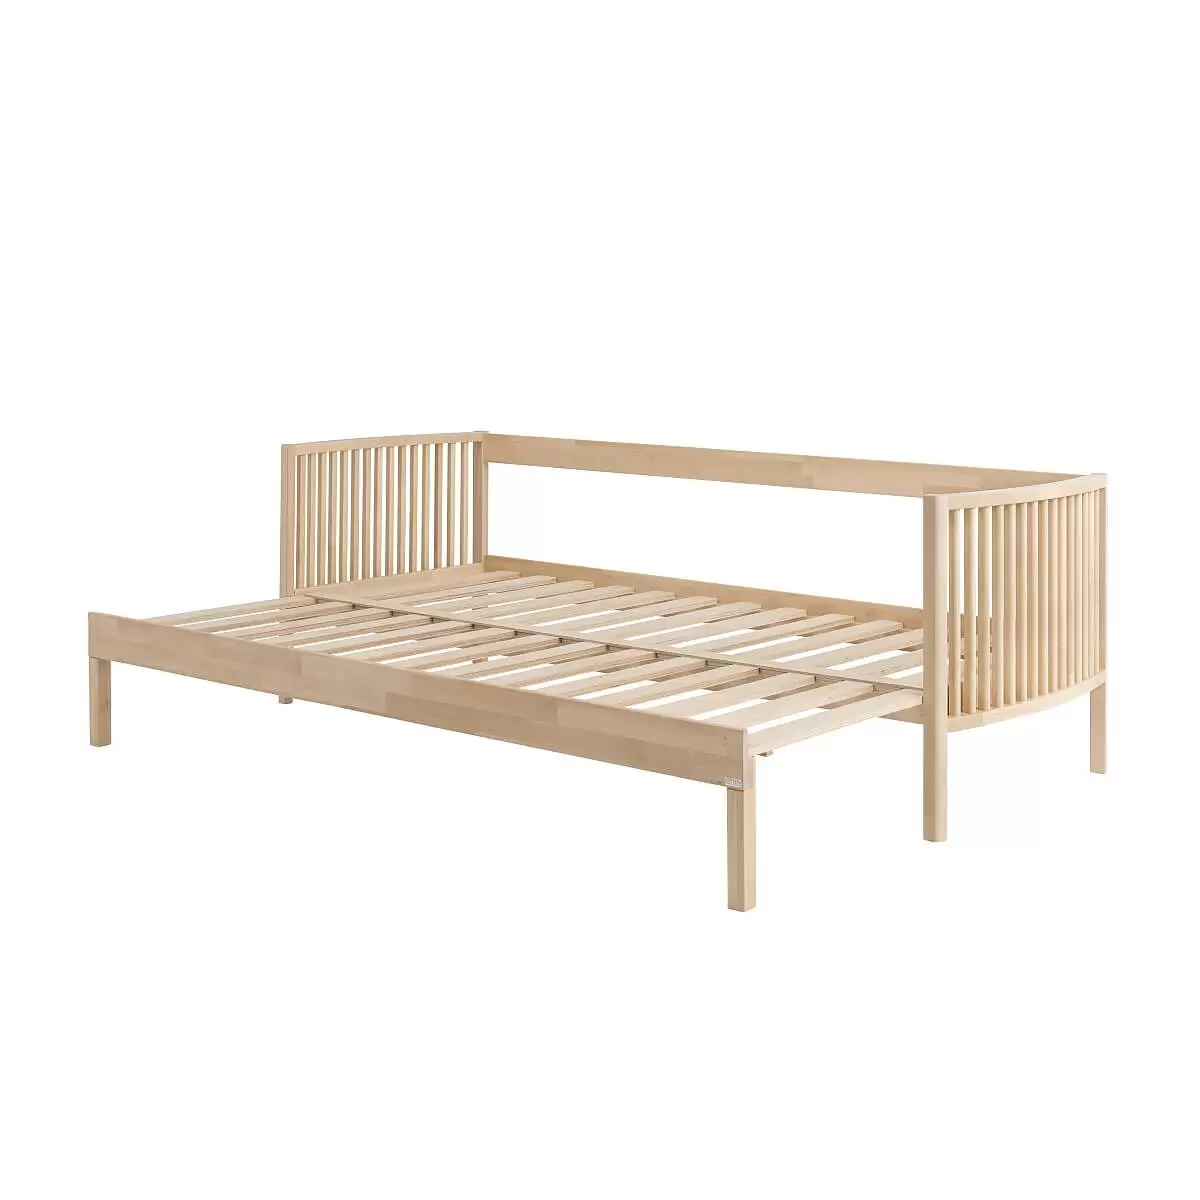 Designerska sofa AARRE. Rozłożony stelaż minimalistycznej sofy z drewna brzozy skandynawskiej